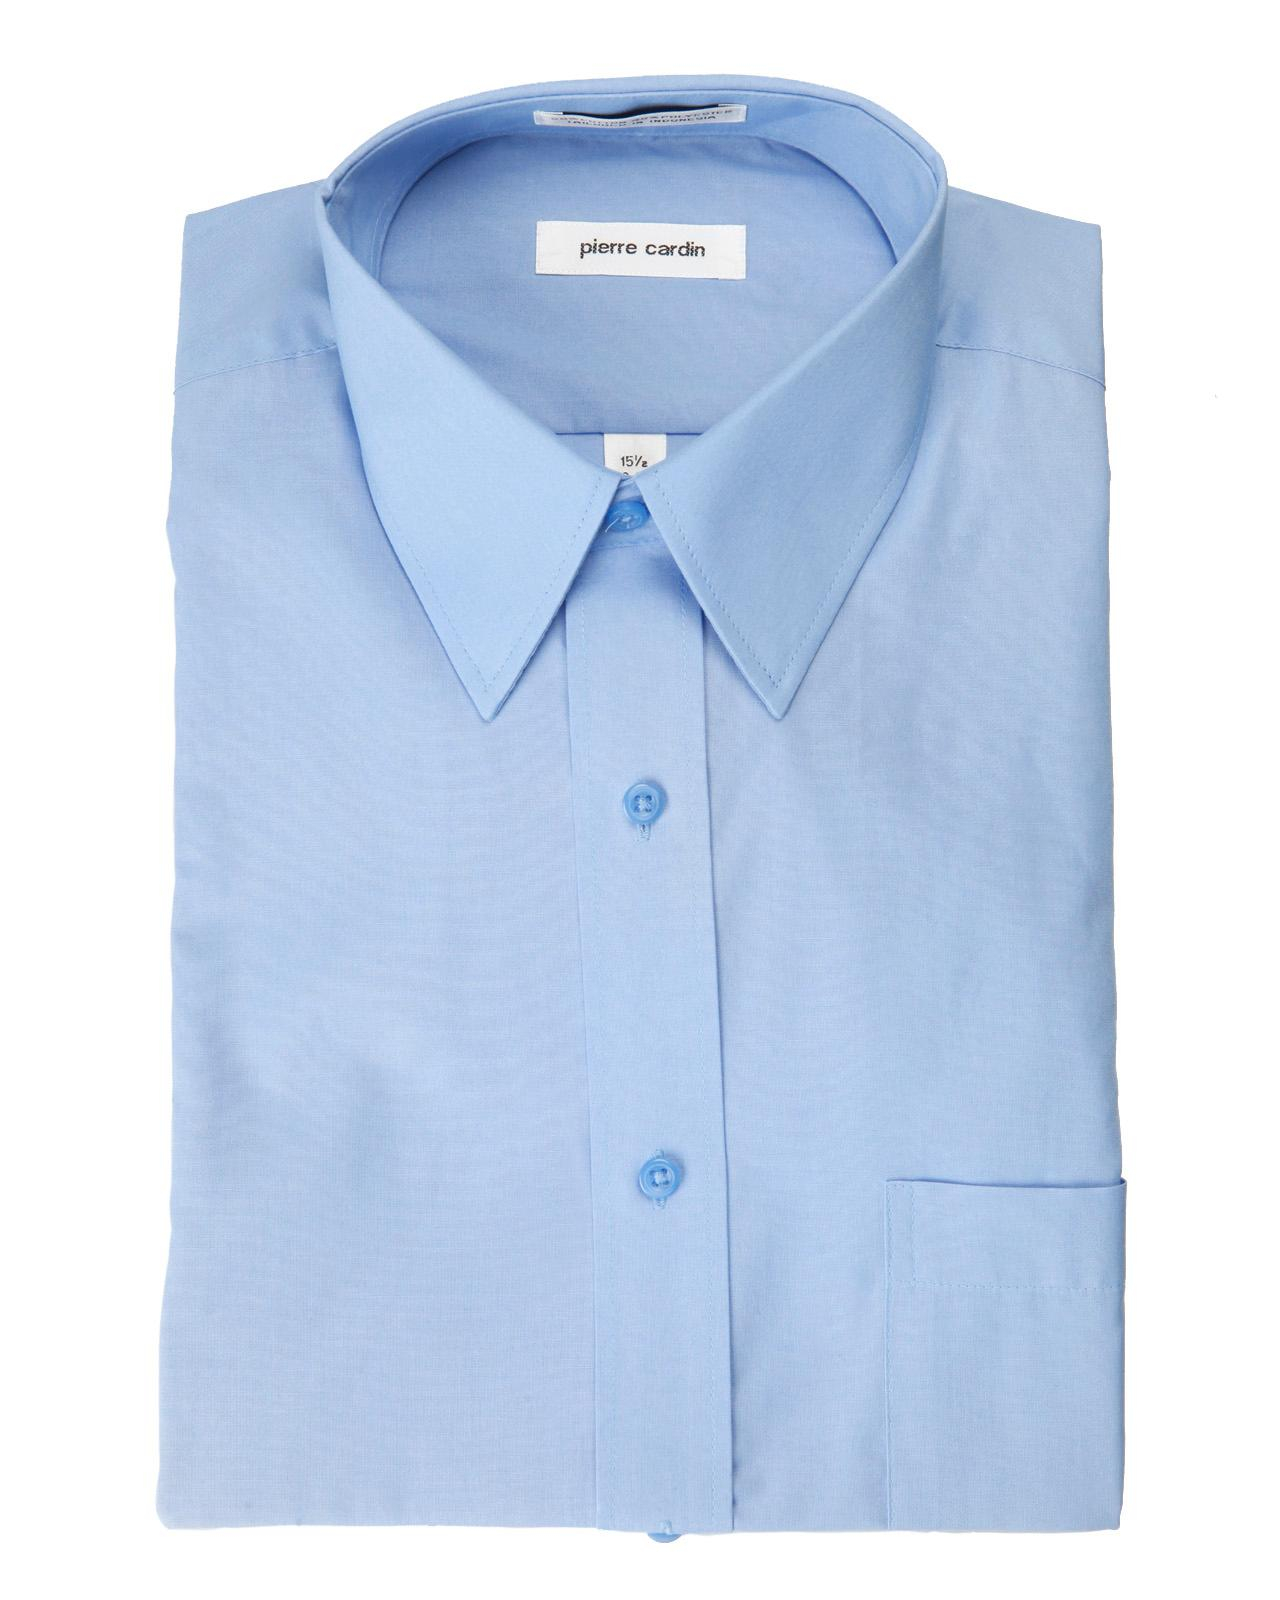 Lyst - Pierre Cardin Regular Fit Open Pocket Dress Shirt in Blue for Men